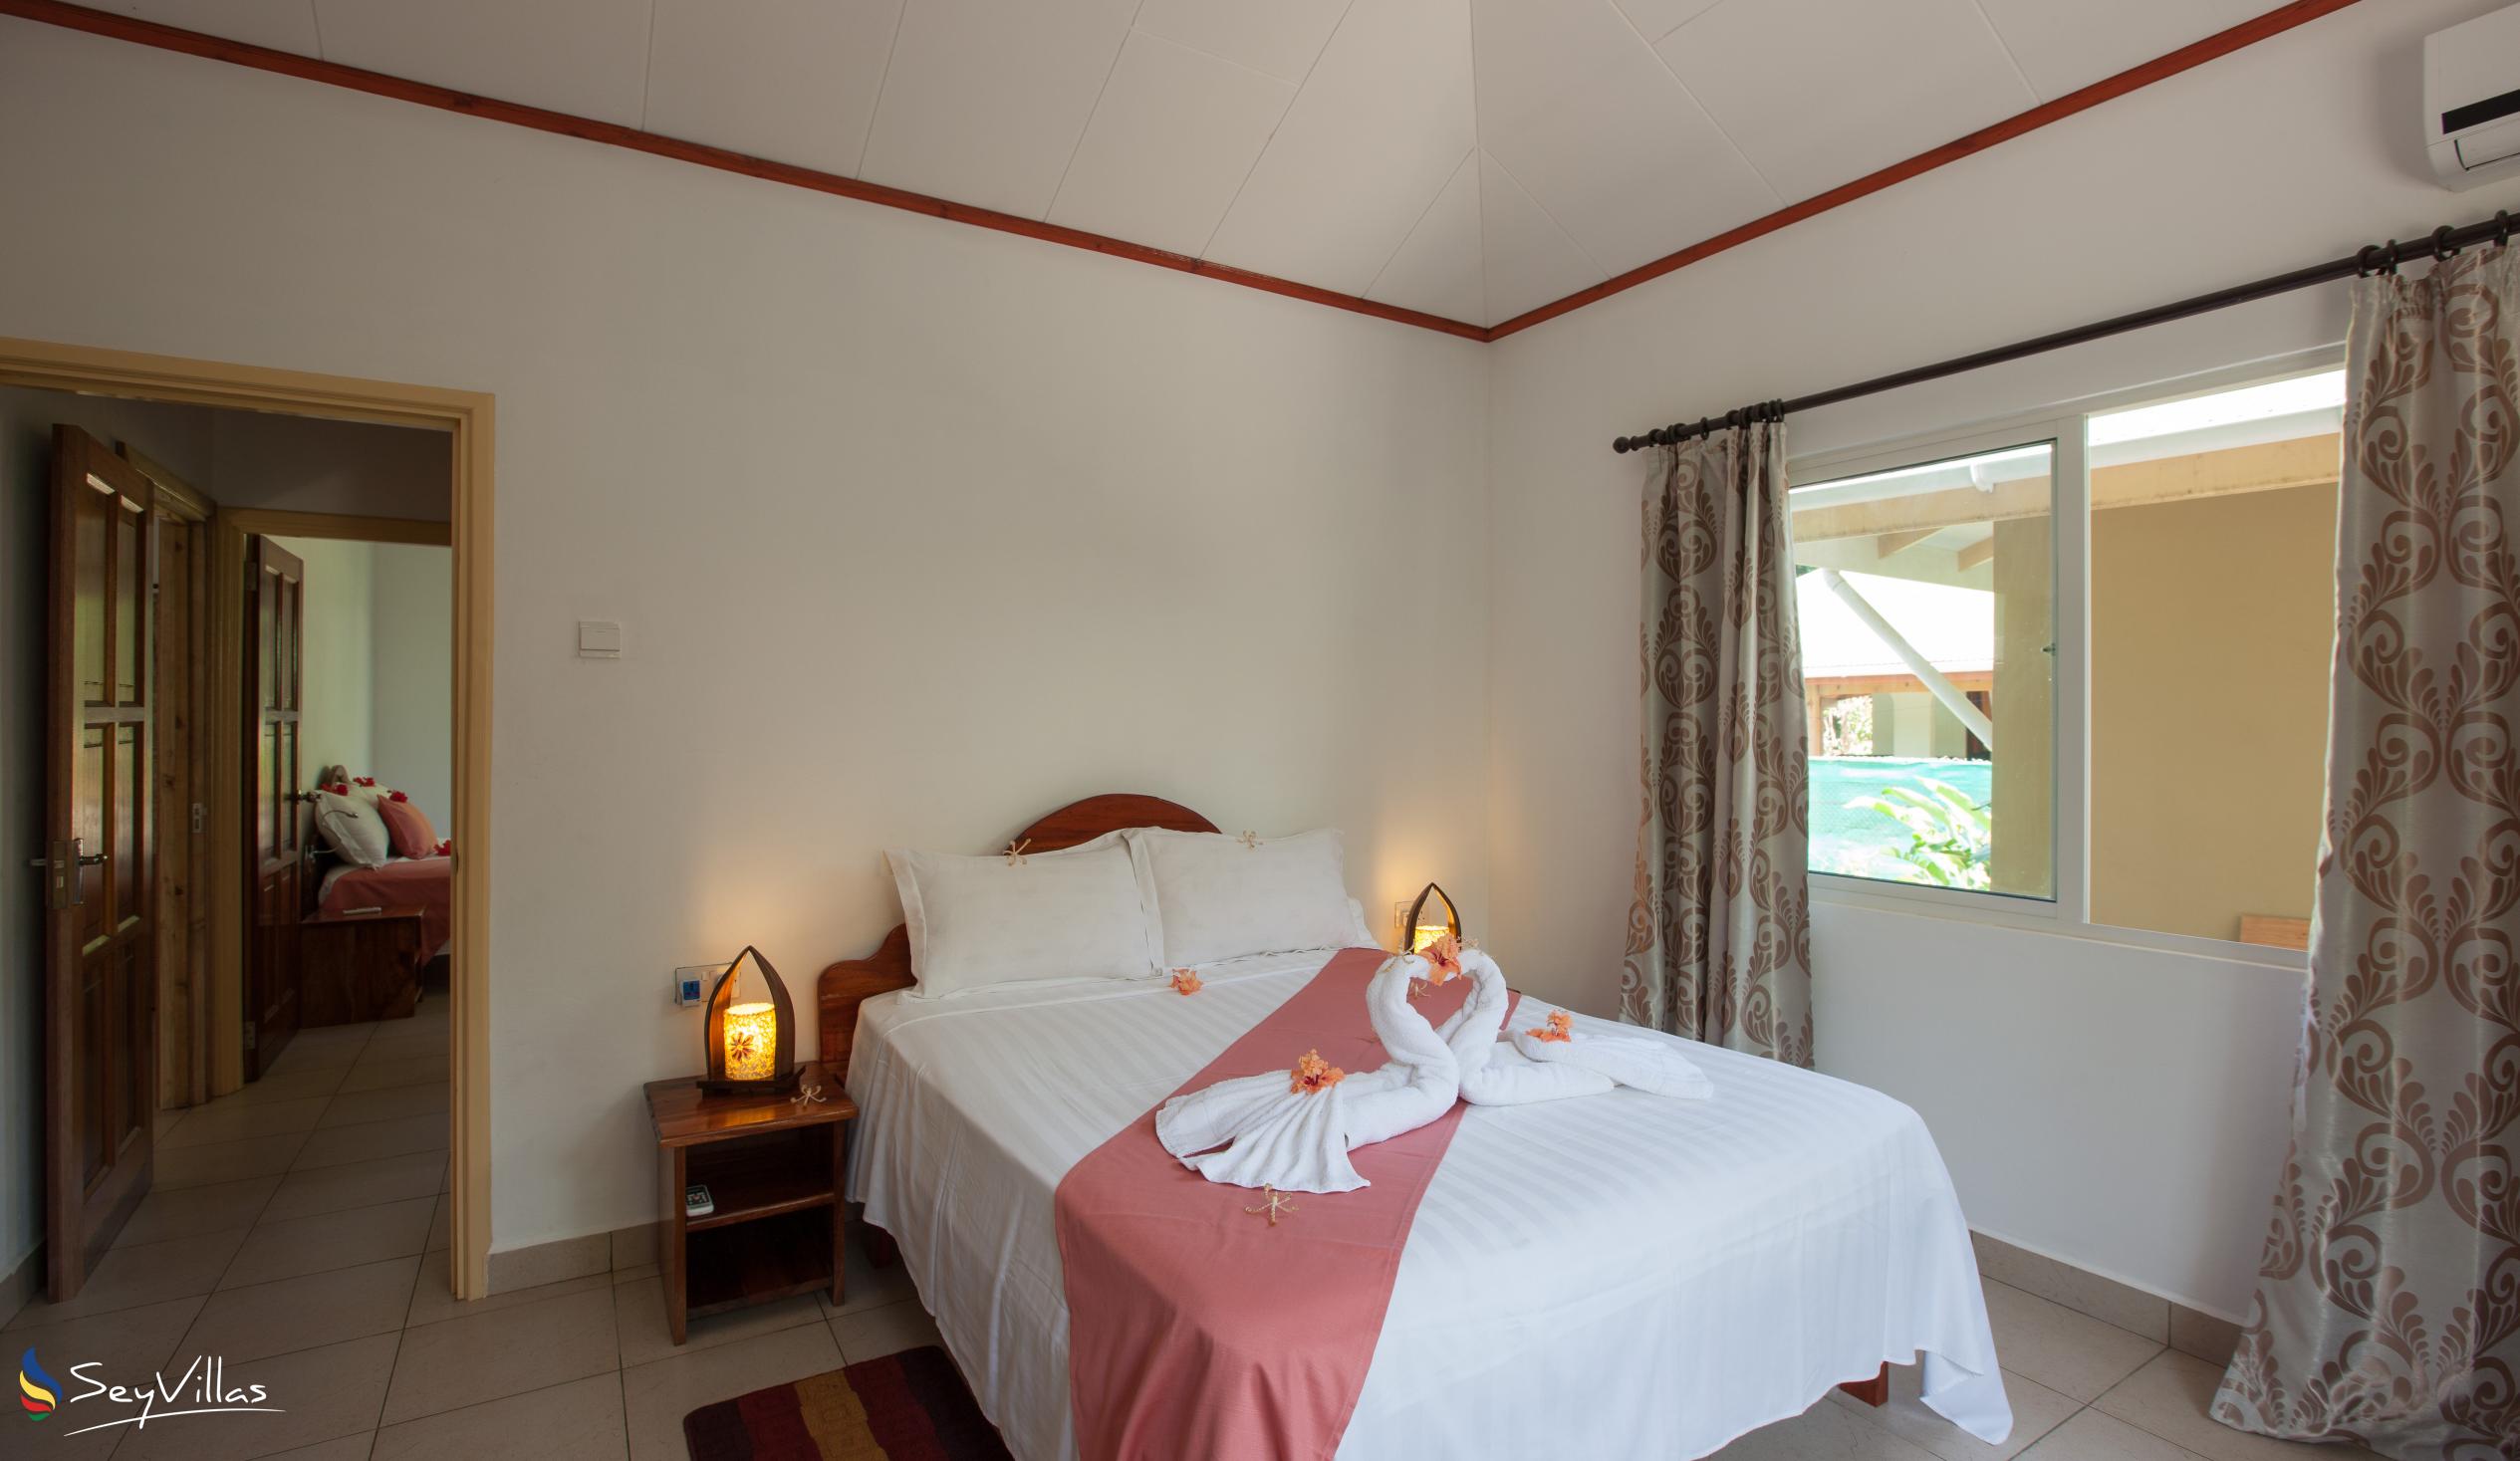 Foto 22: Hostellerie La Digue - Chalet mit 3 Schlafzimmern - La Digue (Seychellen)